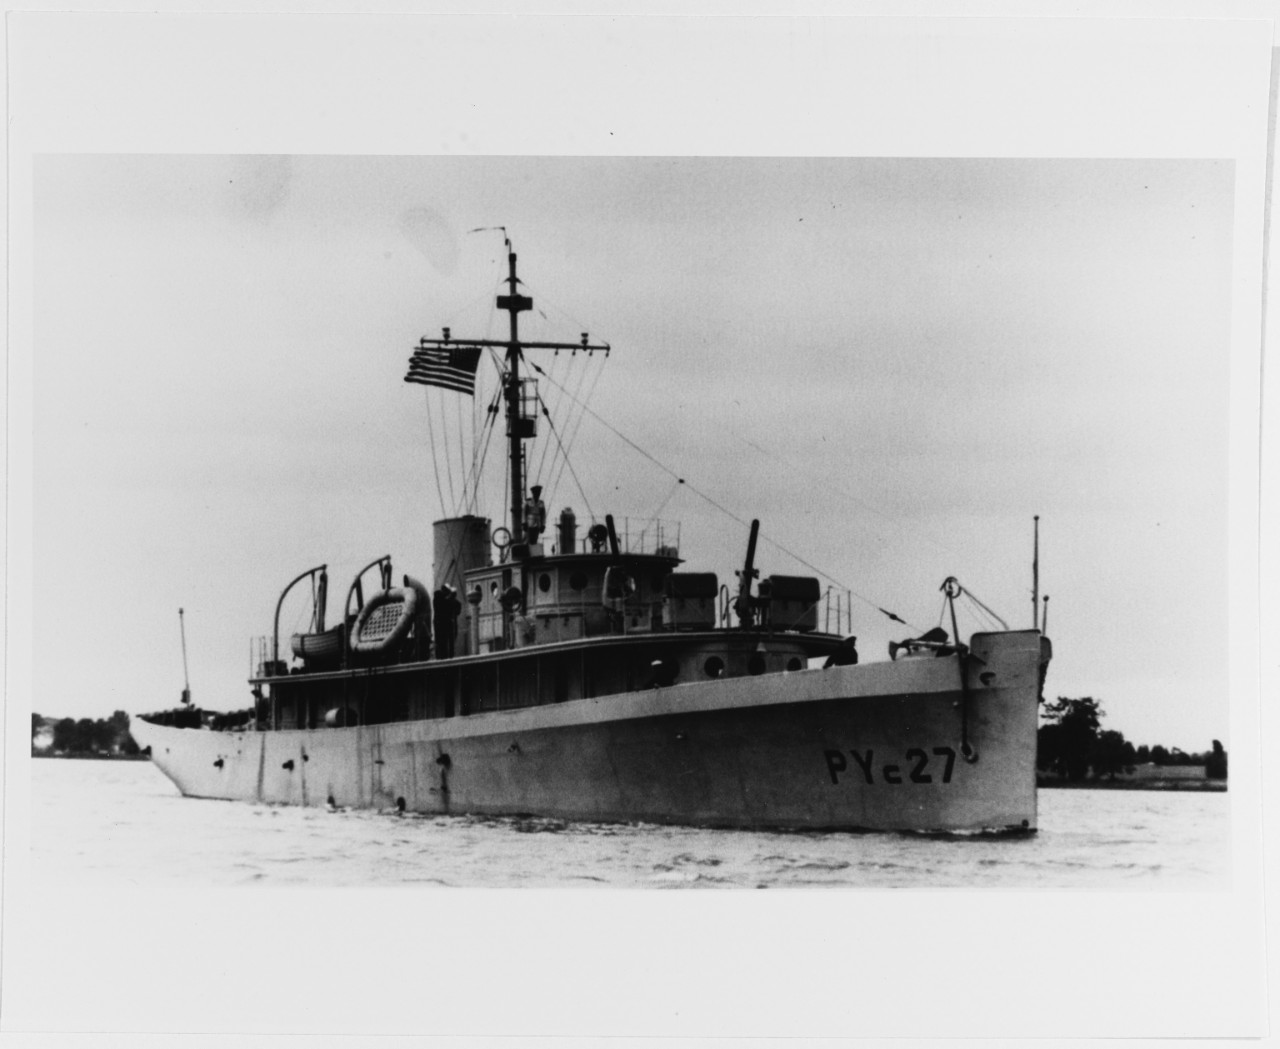 USS COLLEEN (PYc-27)